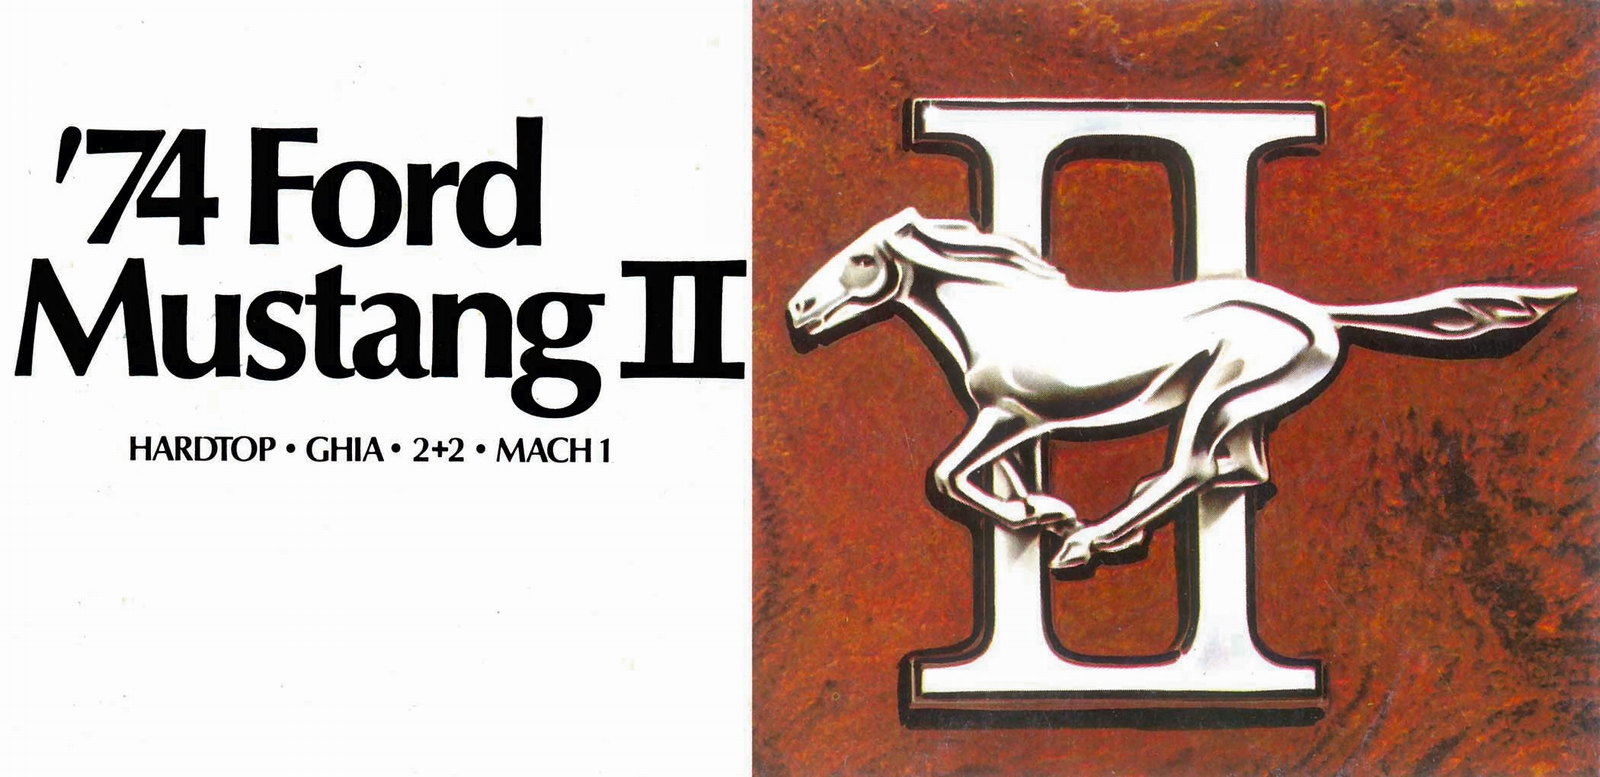 n_1974 Mustang II Folder-01.jpg